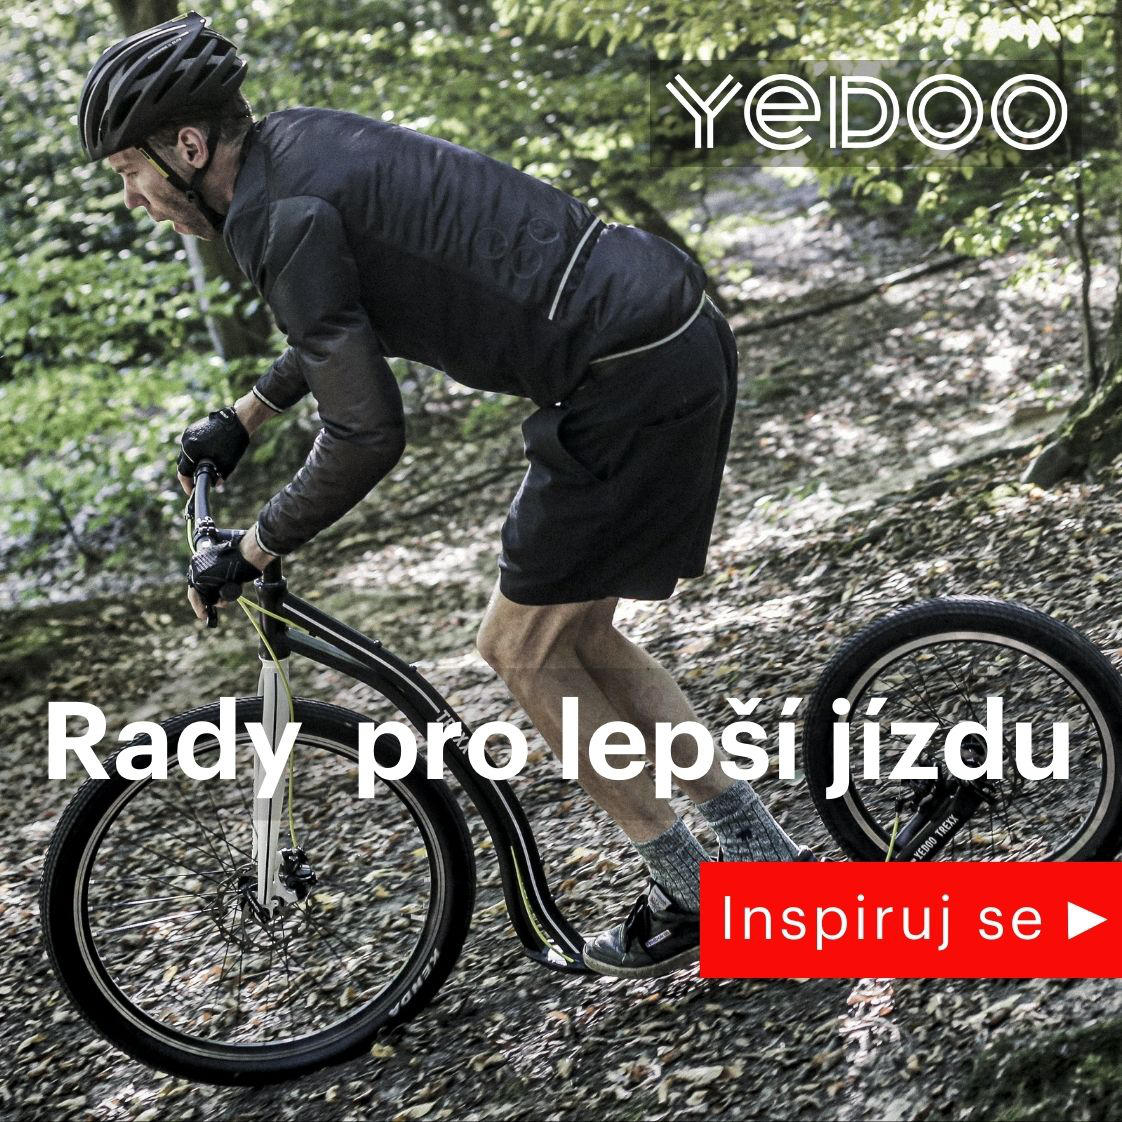 Yedoo – inspiruj se | Rady pro lepší jízdu